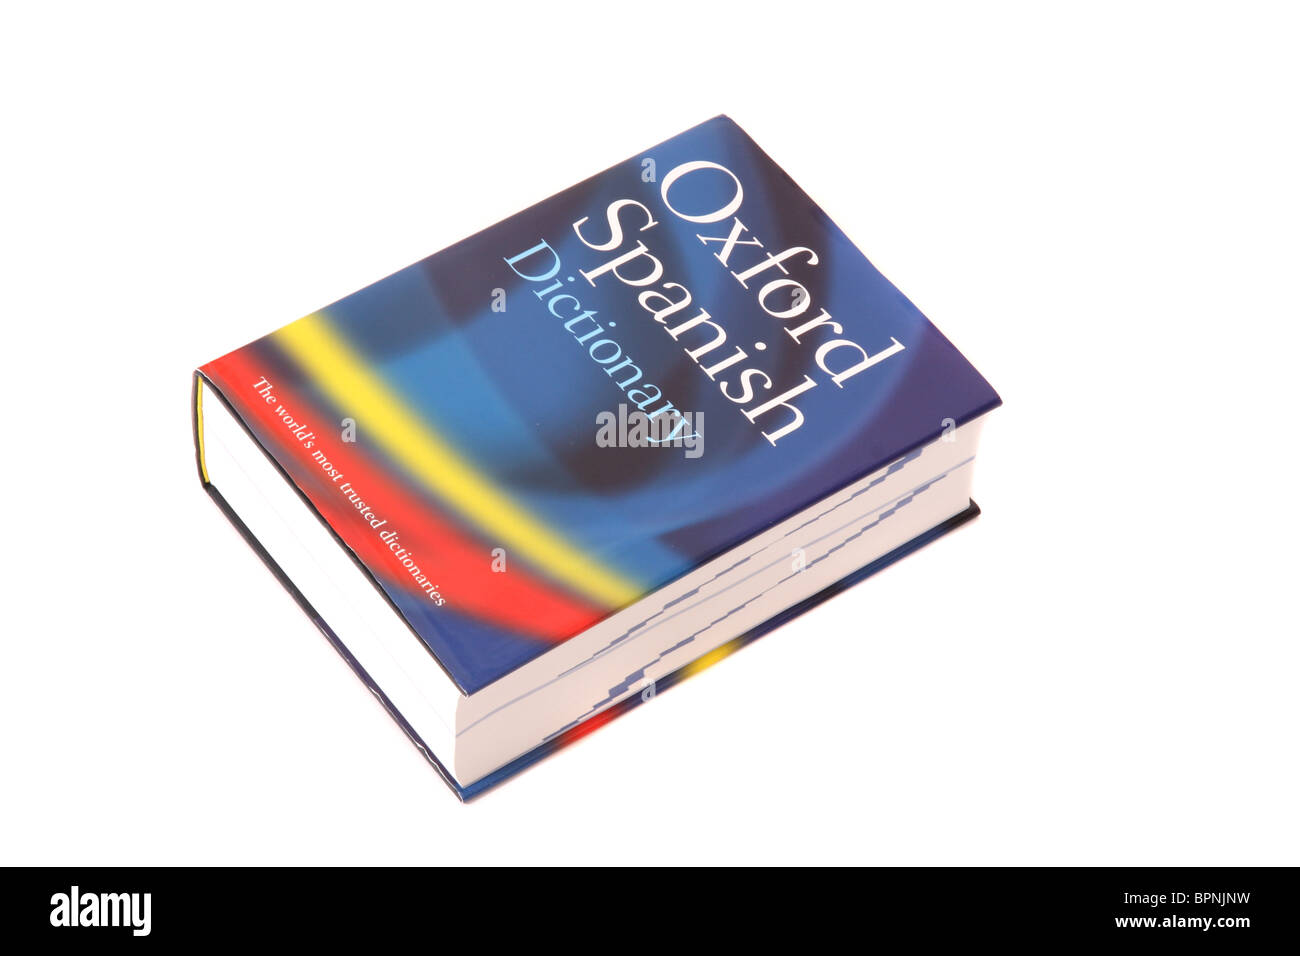 Ein spanisches Wörterbuch von Oxford Stockfoto